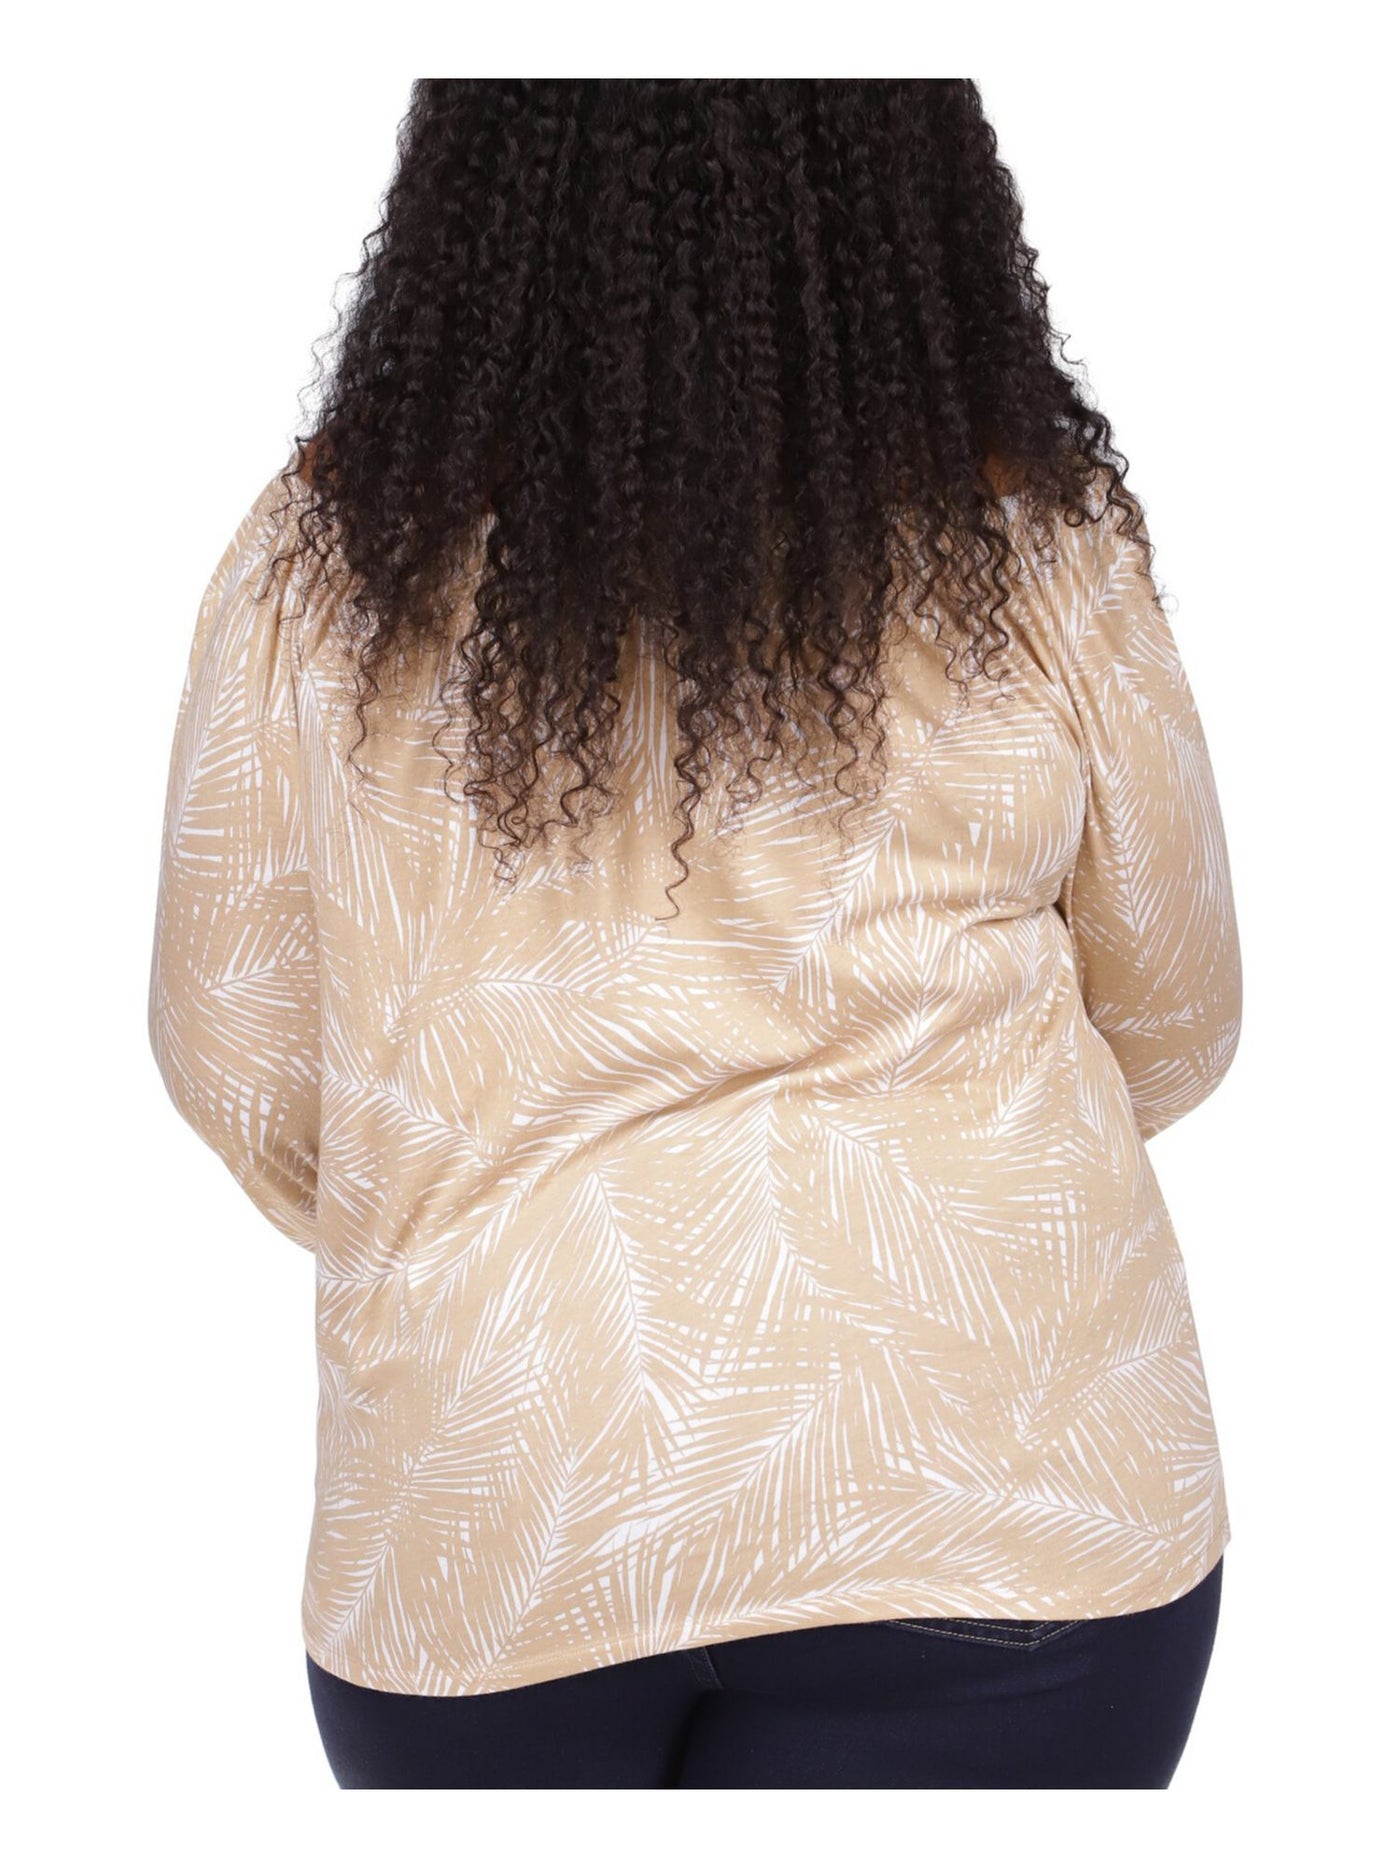 MICHAEL KORS Womens Beige Tie Sheer Logo Tab Printed 3/4 Sleeve Round Neck Top Plus 1X